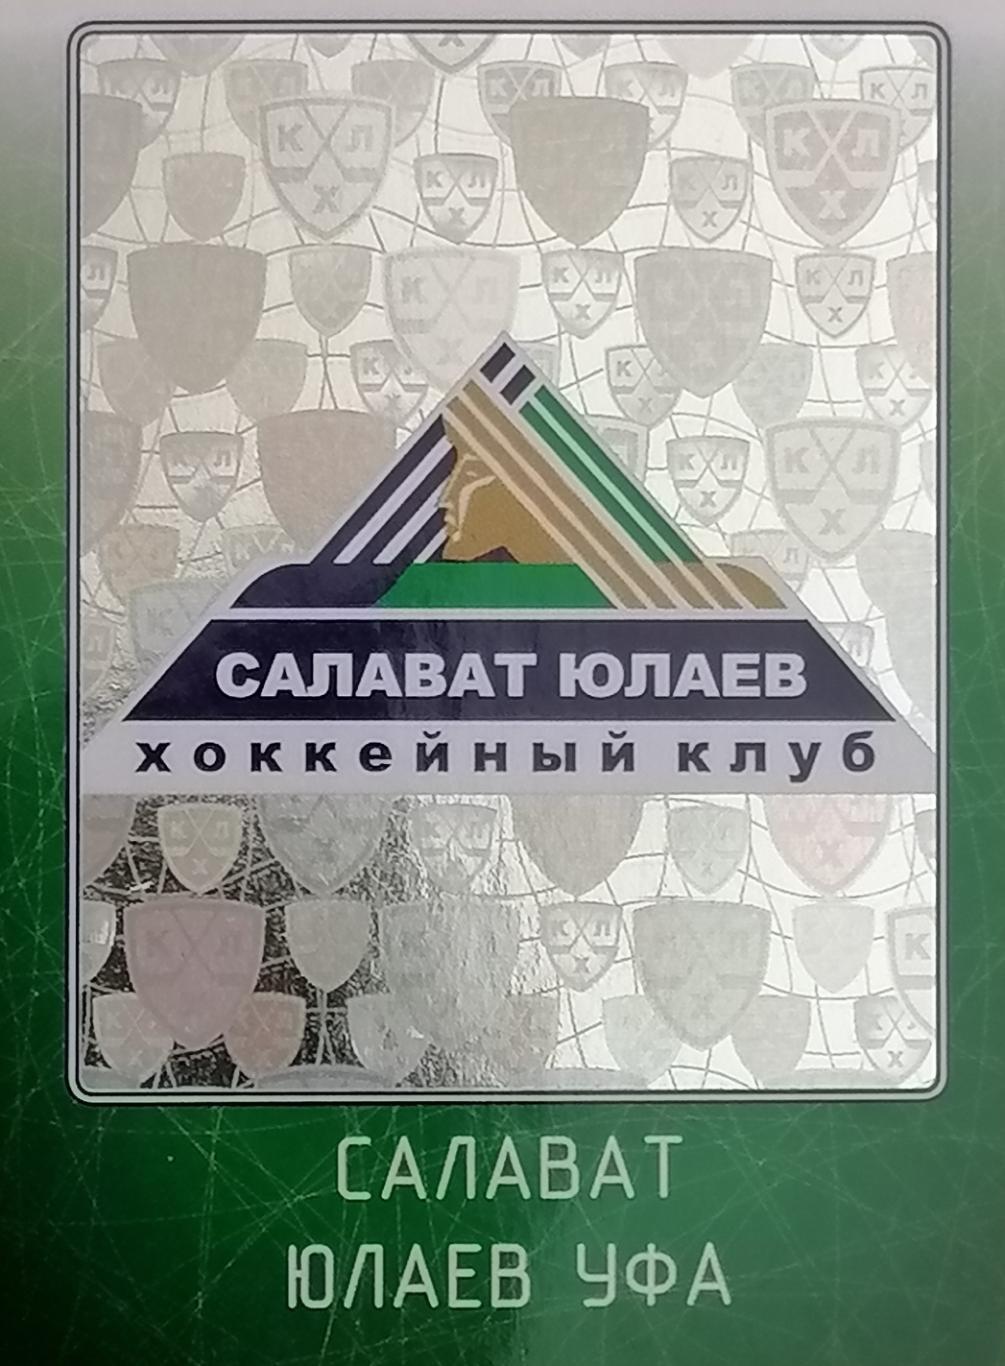 Наклейка. SeReal КХЛ 2011/2012. №01. Салават Юлаев Уфа.